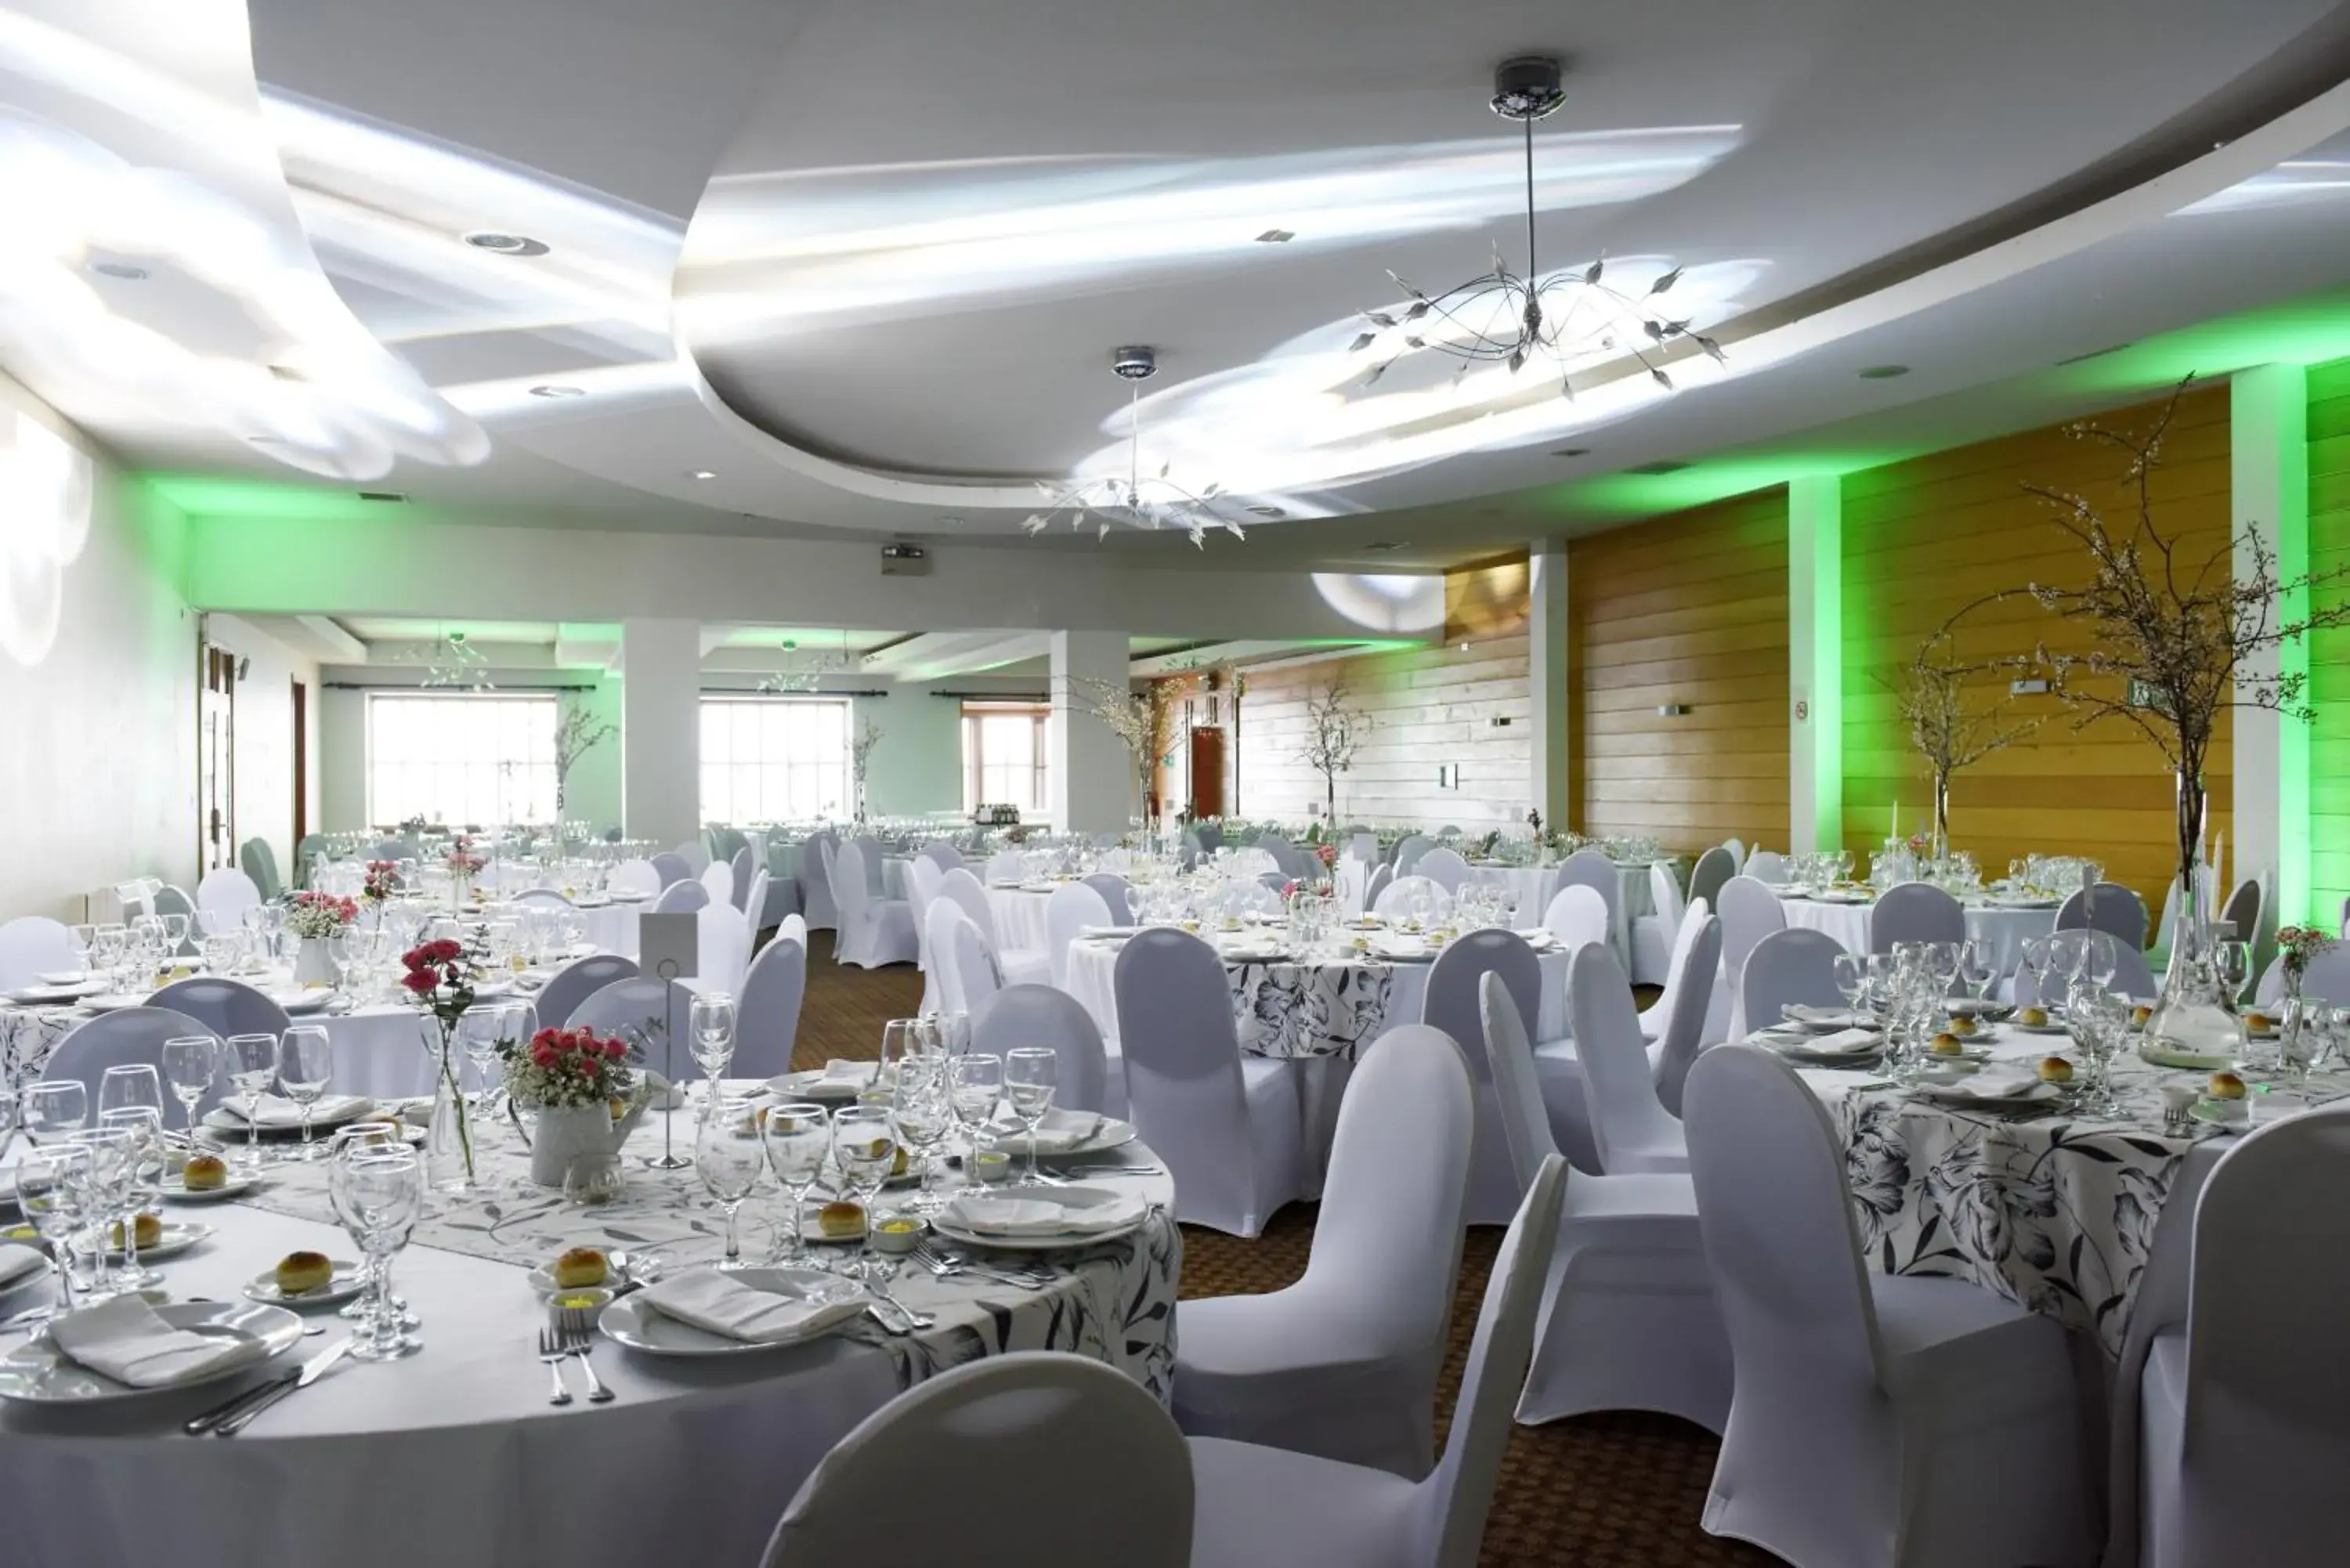 Banquet/Function facilities, Banquet Facilities in Hotel Bellavista